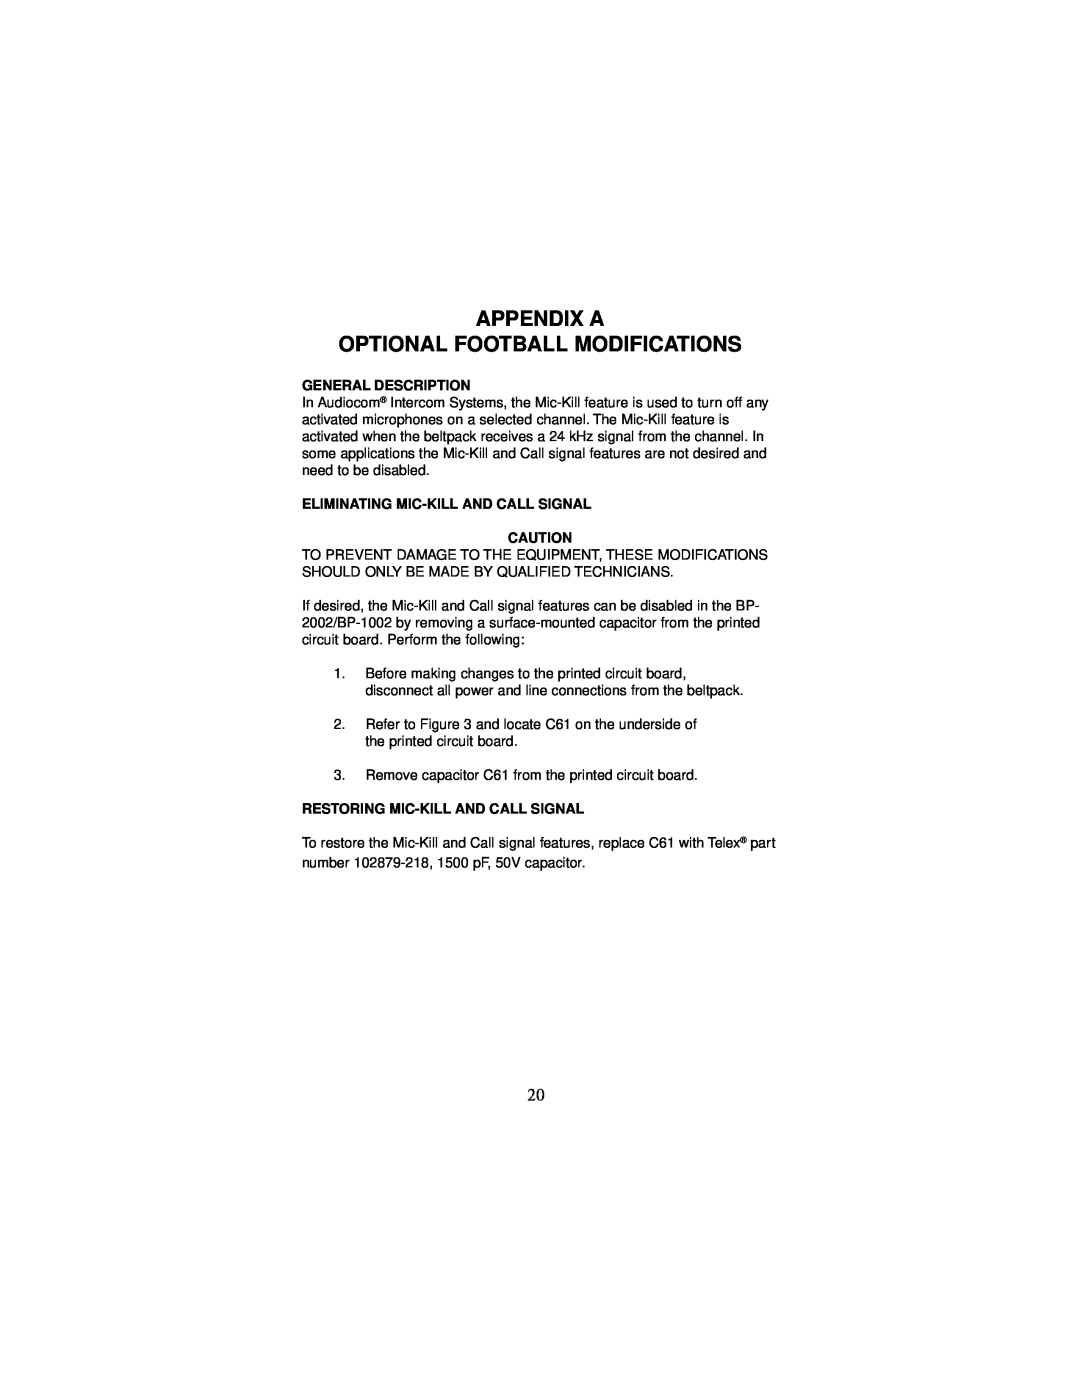 Telex BP-2002 Appendix A Optional Football Modifications, General Description, Eliminating Mic-Kill And Call Signal 